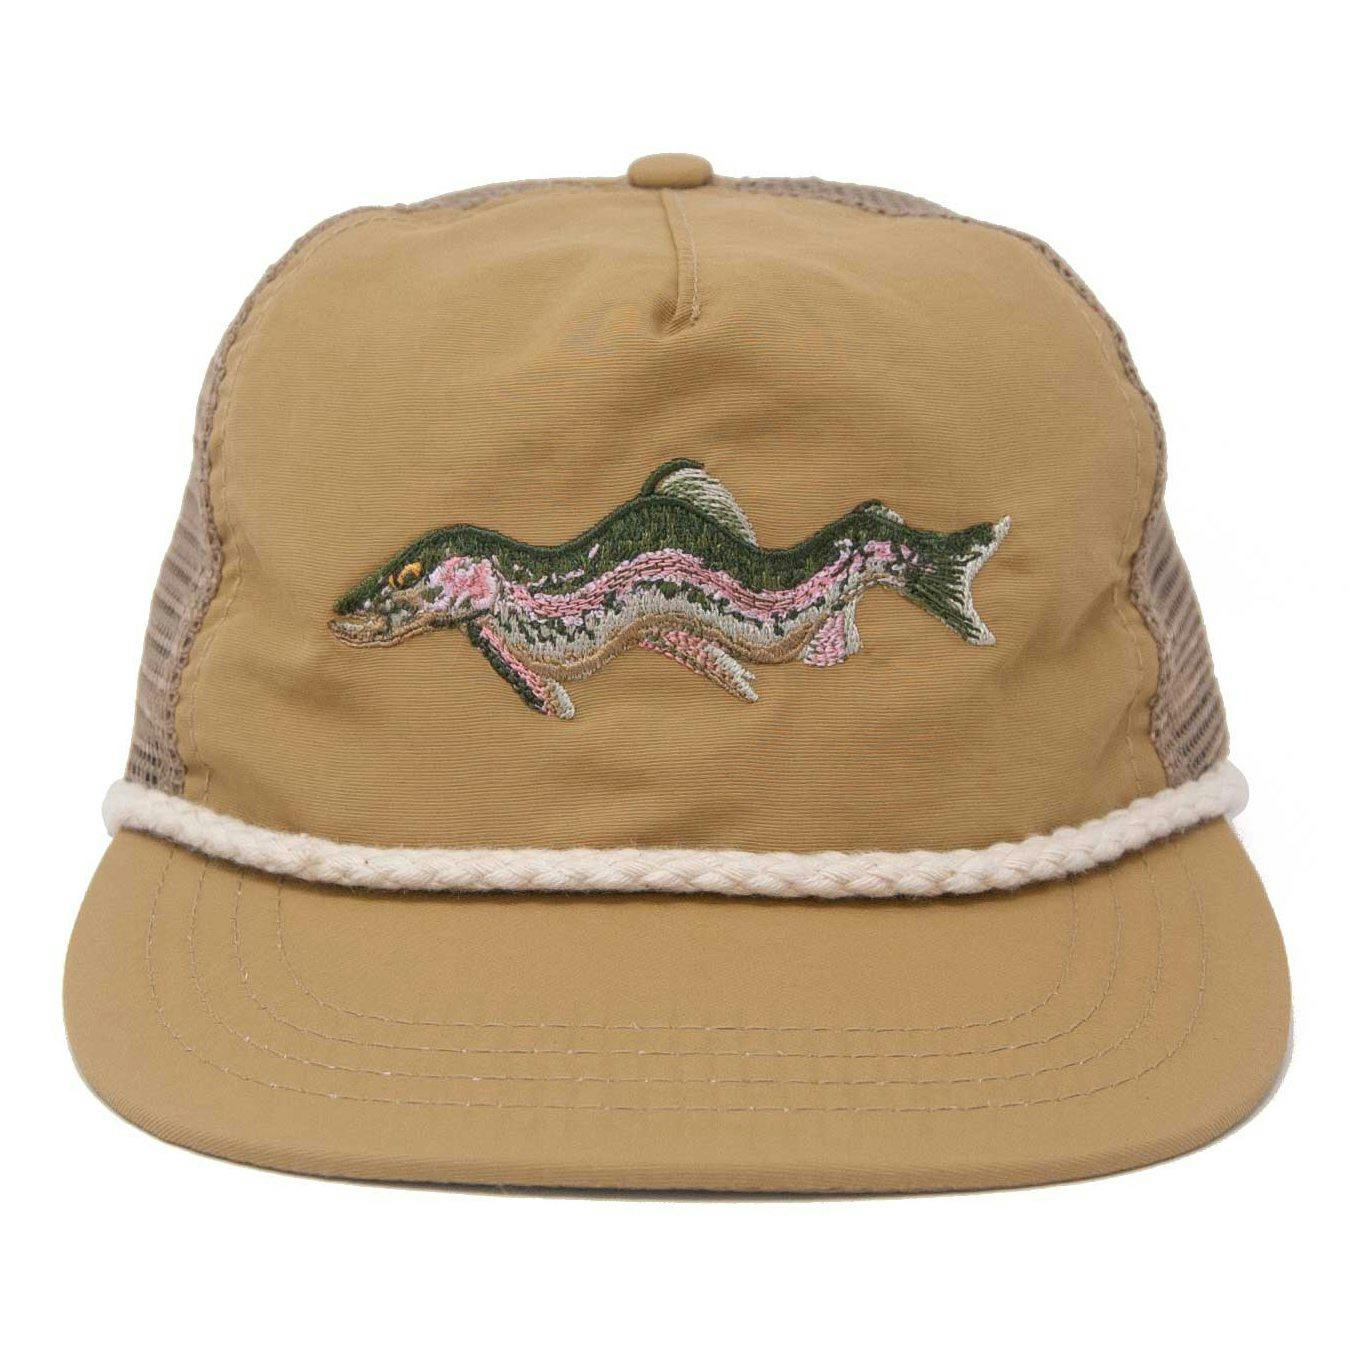 Unisex Bucket Hat Beastie Boys Fisherman Cap Packable Summer Sun